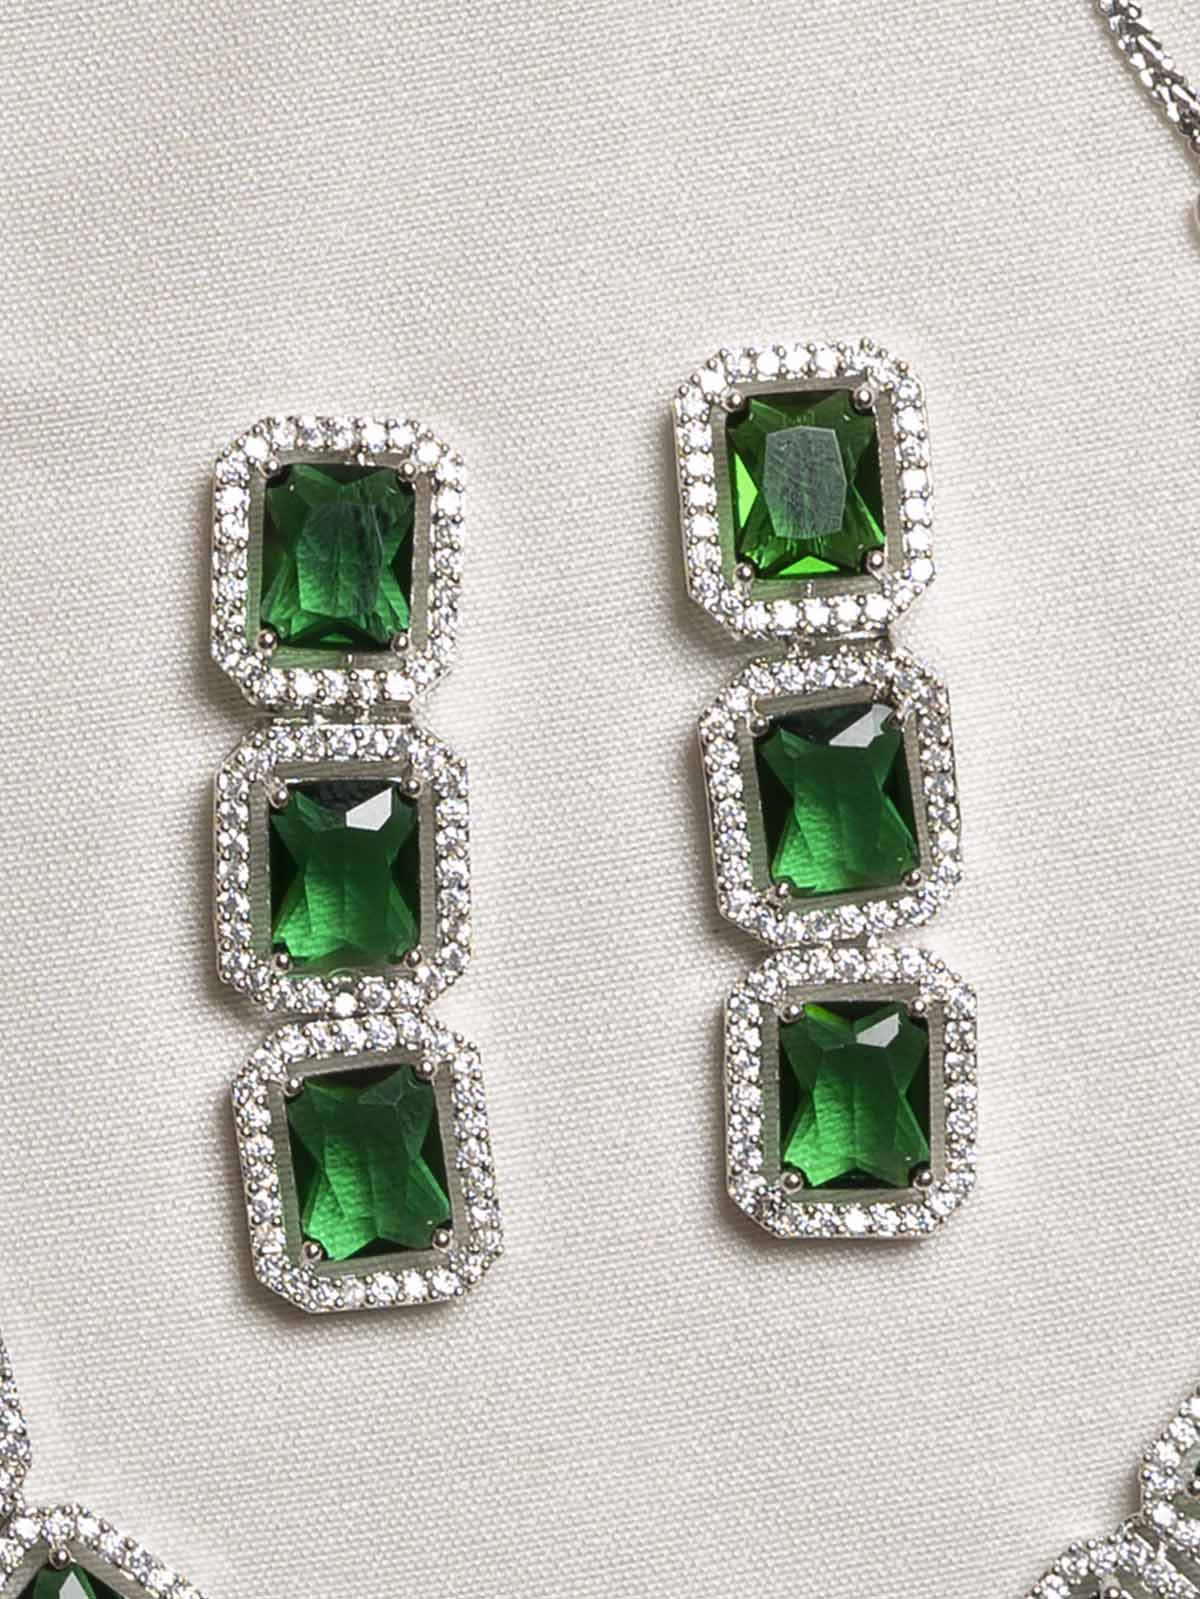 CZSET289GR - Green Color Faux Diamond Necklace Set